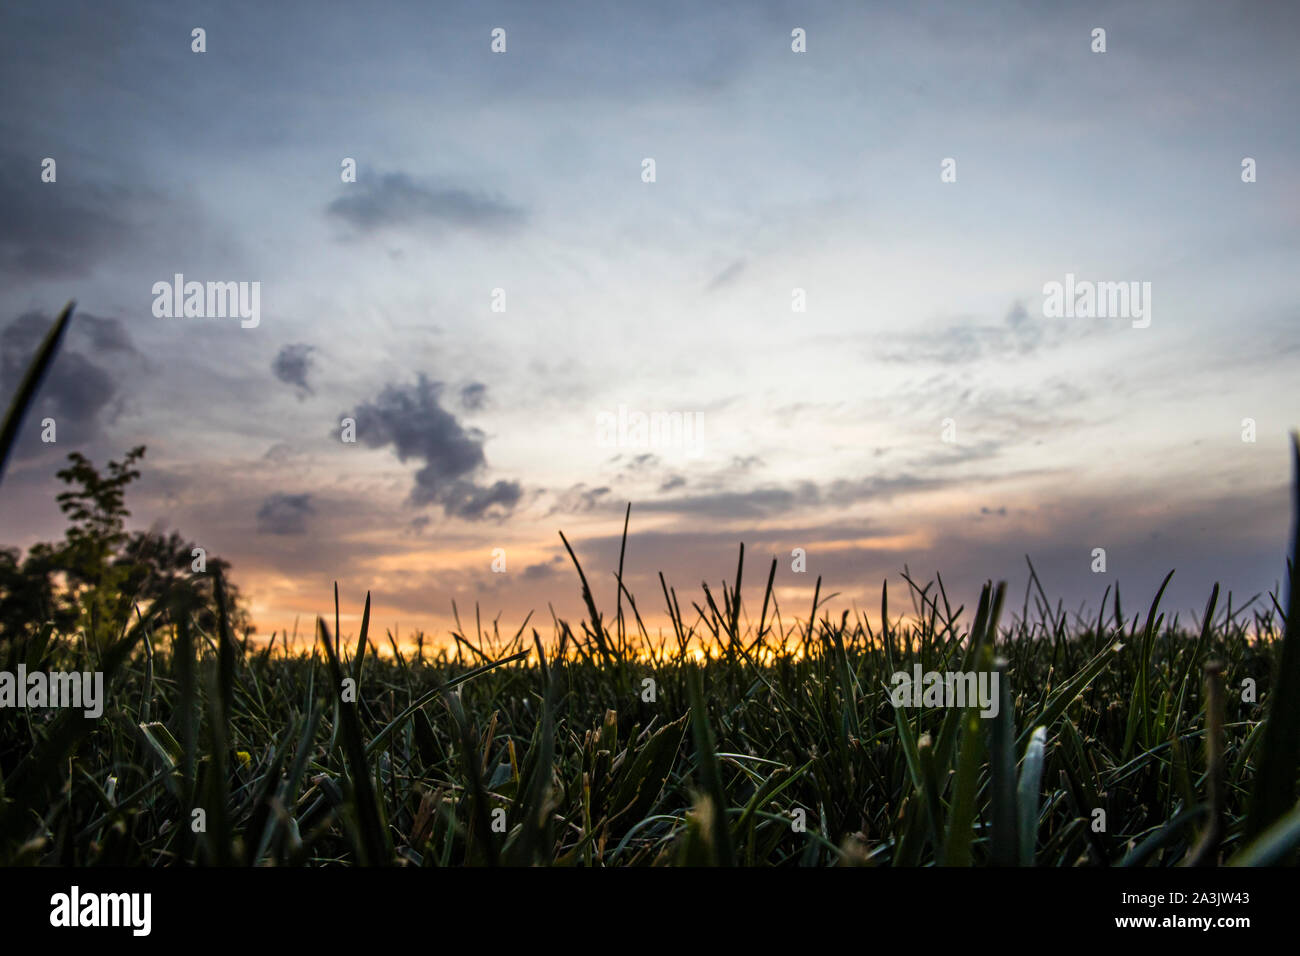 Ein sun set Himmel mit einem Feld von Gras Stockfoto